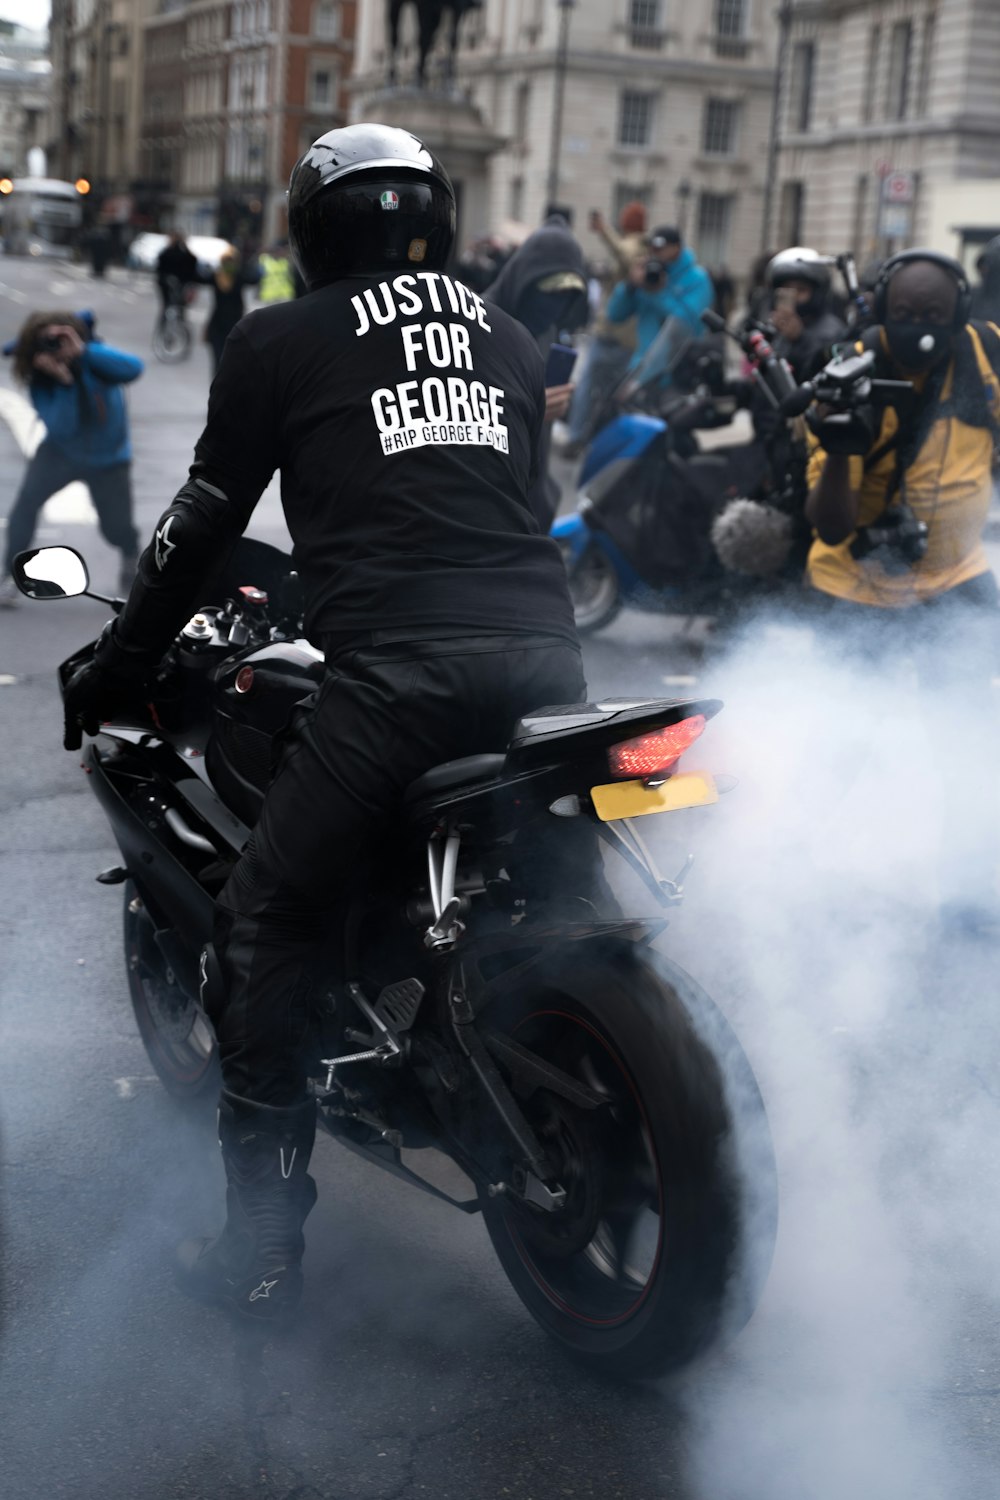 Mann im schwarz-weißen Motorradanzug fährt schwarzes Sportrad